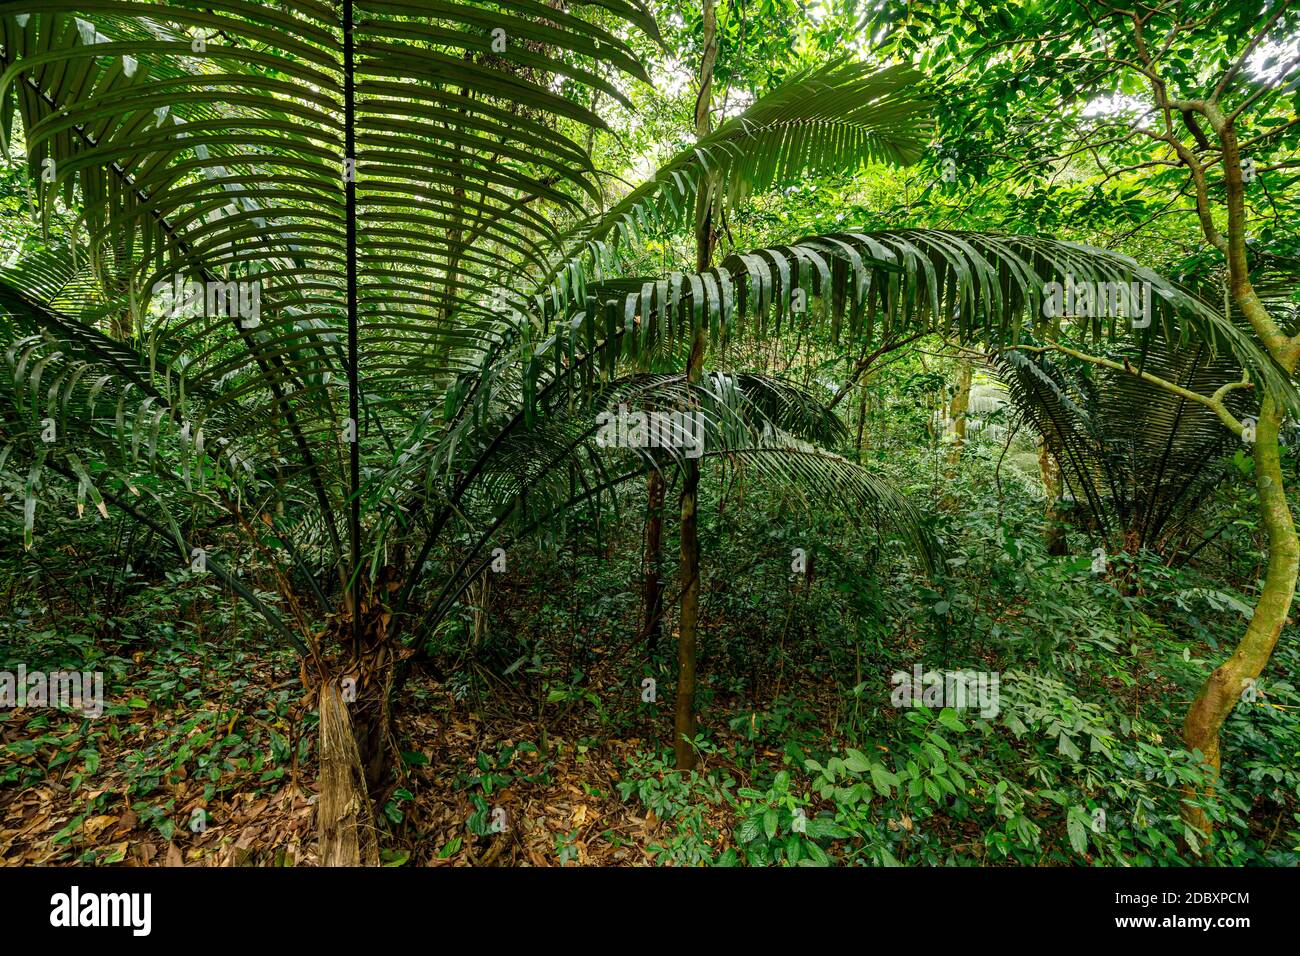 La selva de CUC Phuong en Ninh Binh en Vietnam Foto de stock